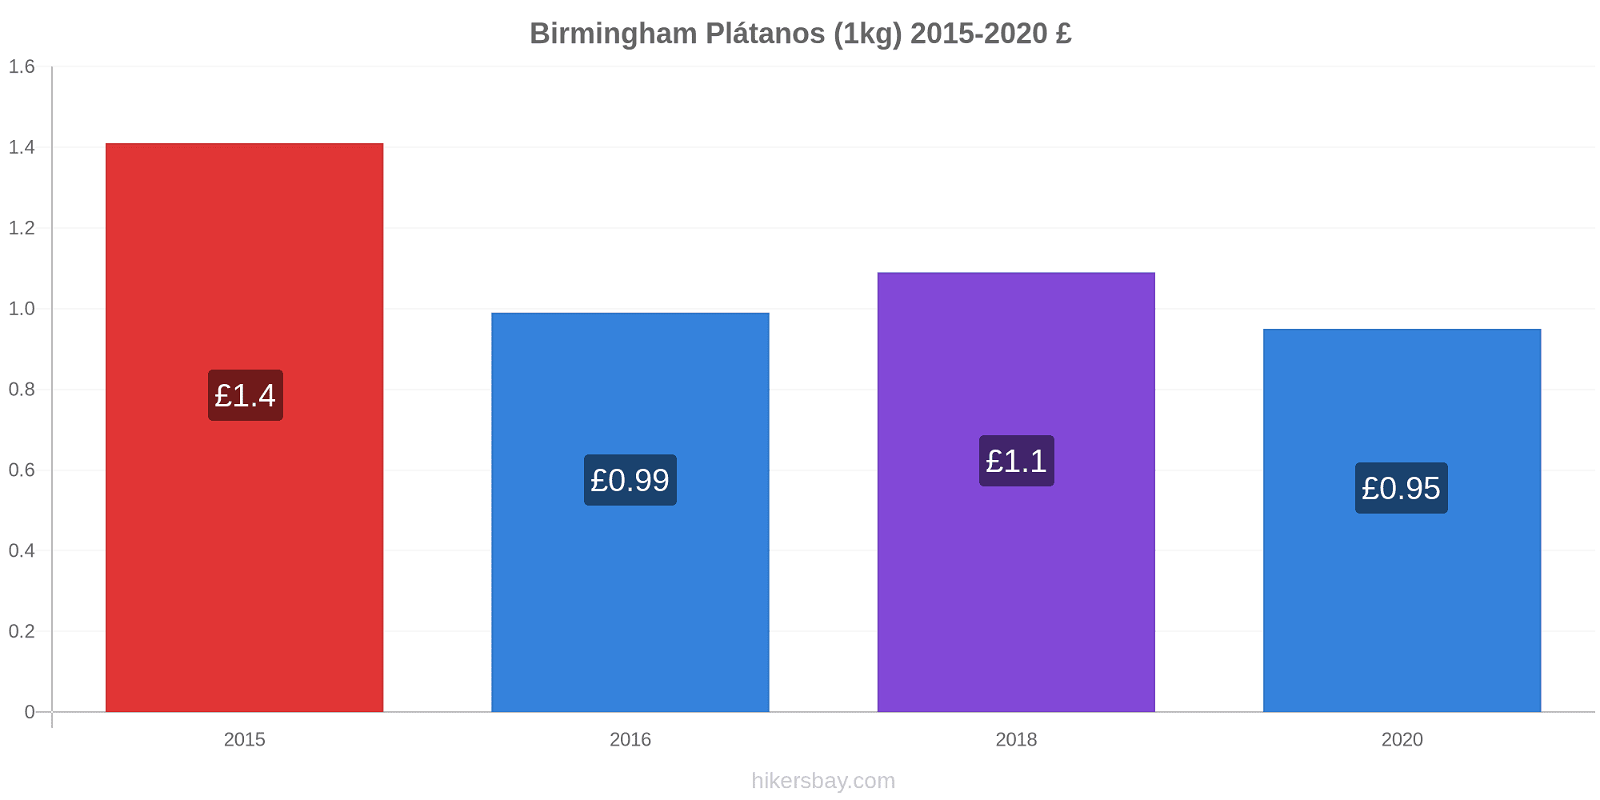 Birmingham cambios de precios Plátano (1kg) hikersbay.com